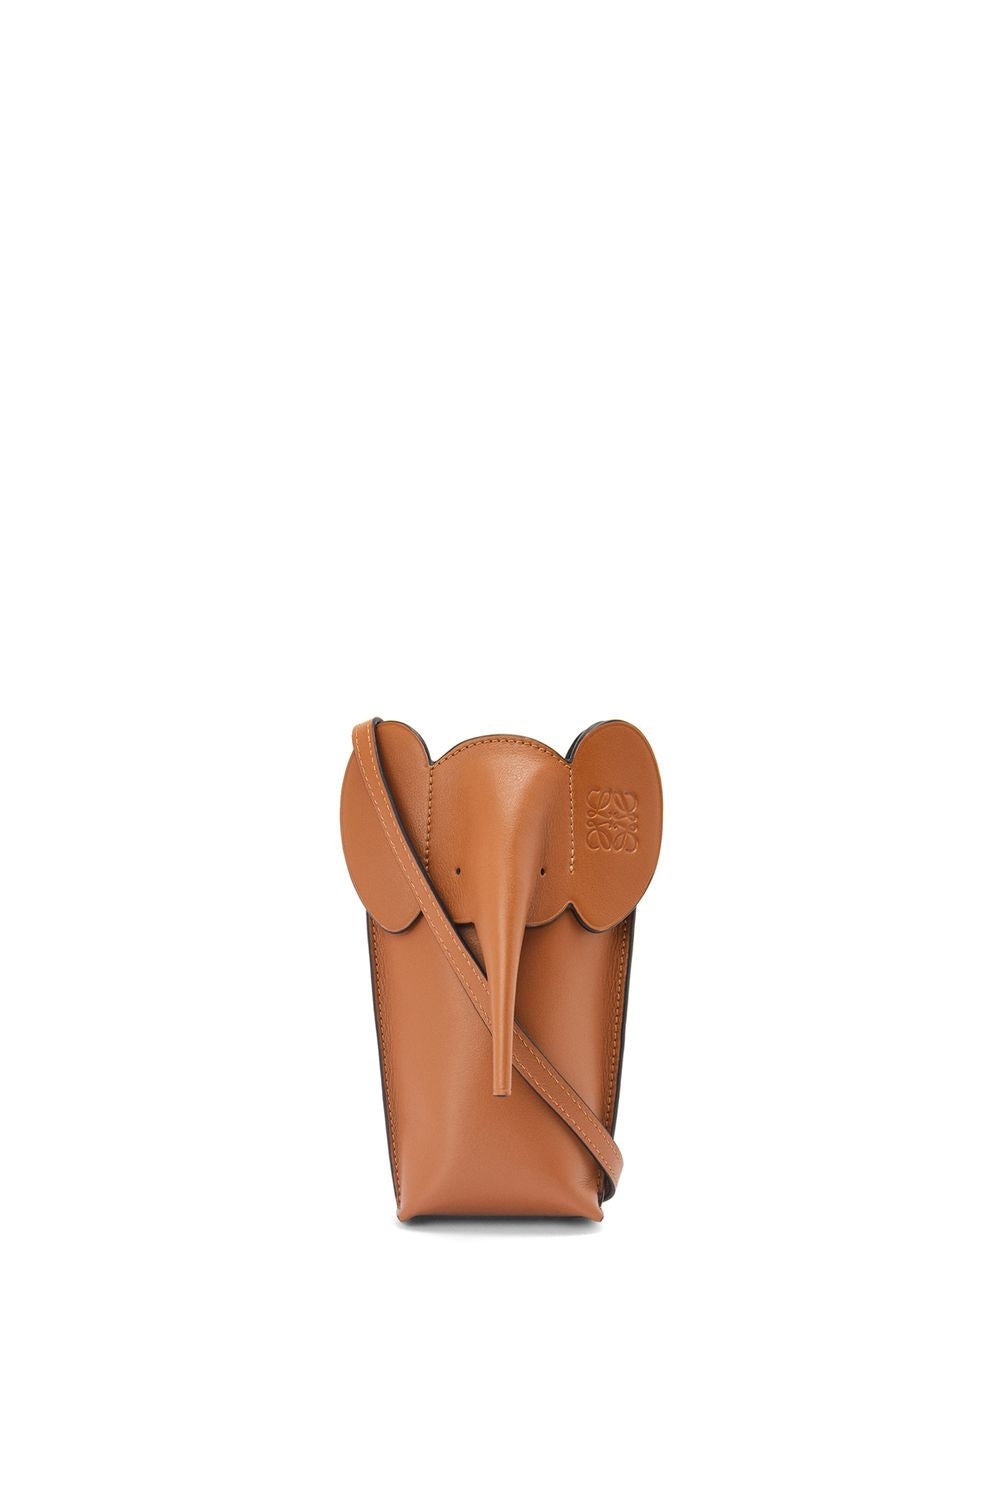 LOEWE Tan Calfskin Mini Crossbody Bag for Women